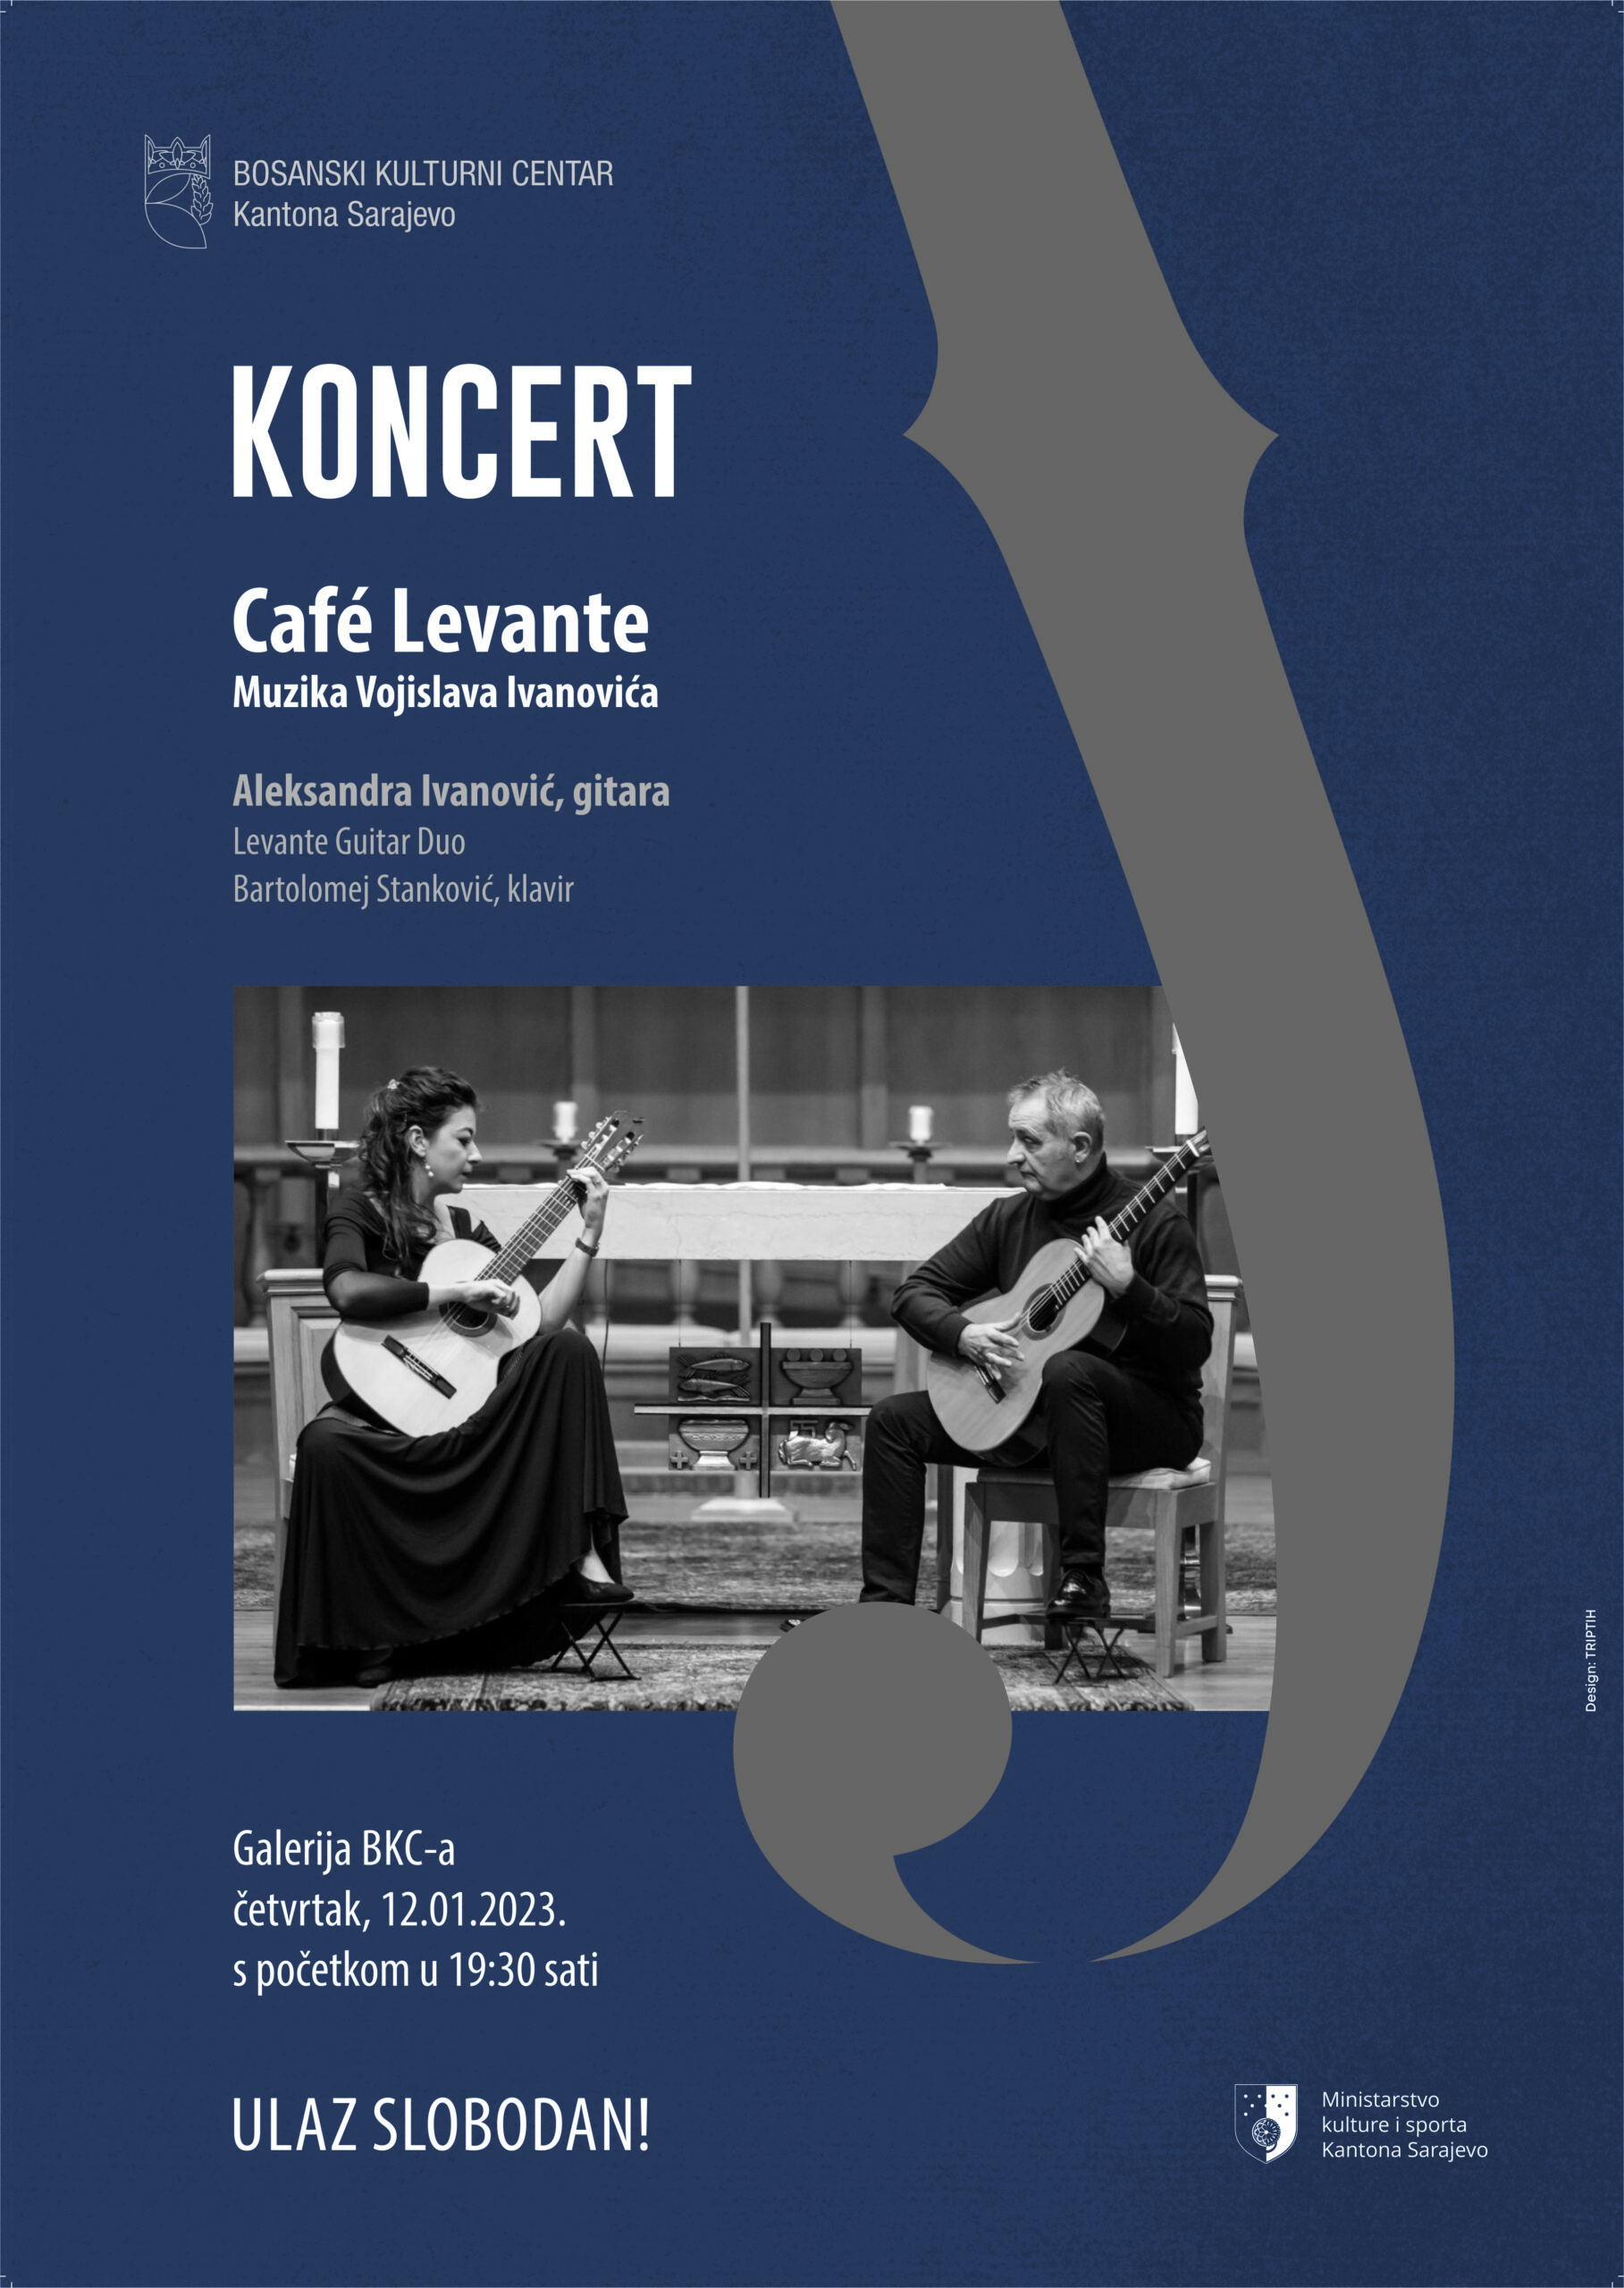 “Café Levante”